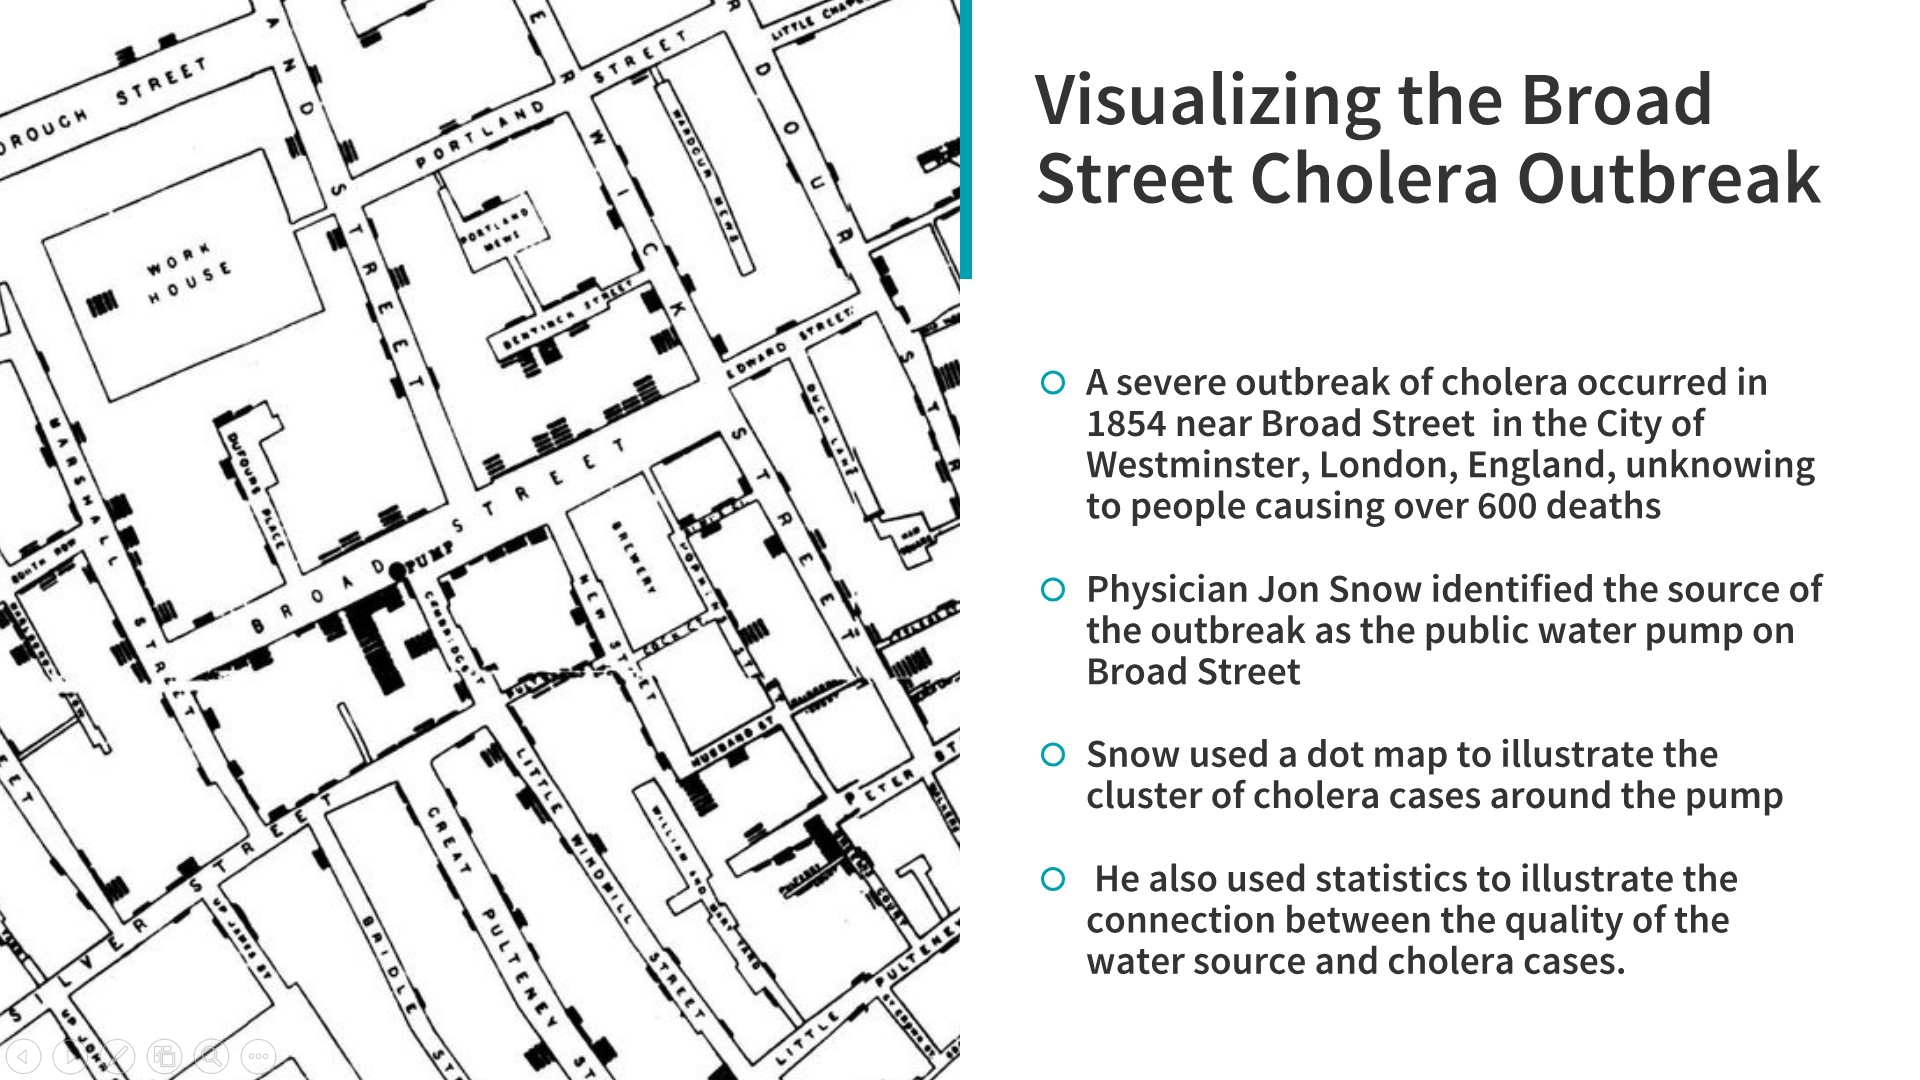 Visualizando a epidemia do cólera na Broad Street, que ajudou a encontrar a causa raiz da explosão da doença! (Fonte: https://github.com/dipanjanS/art_of_data_visualization)